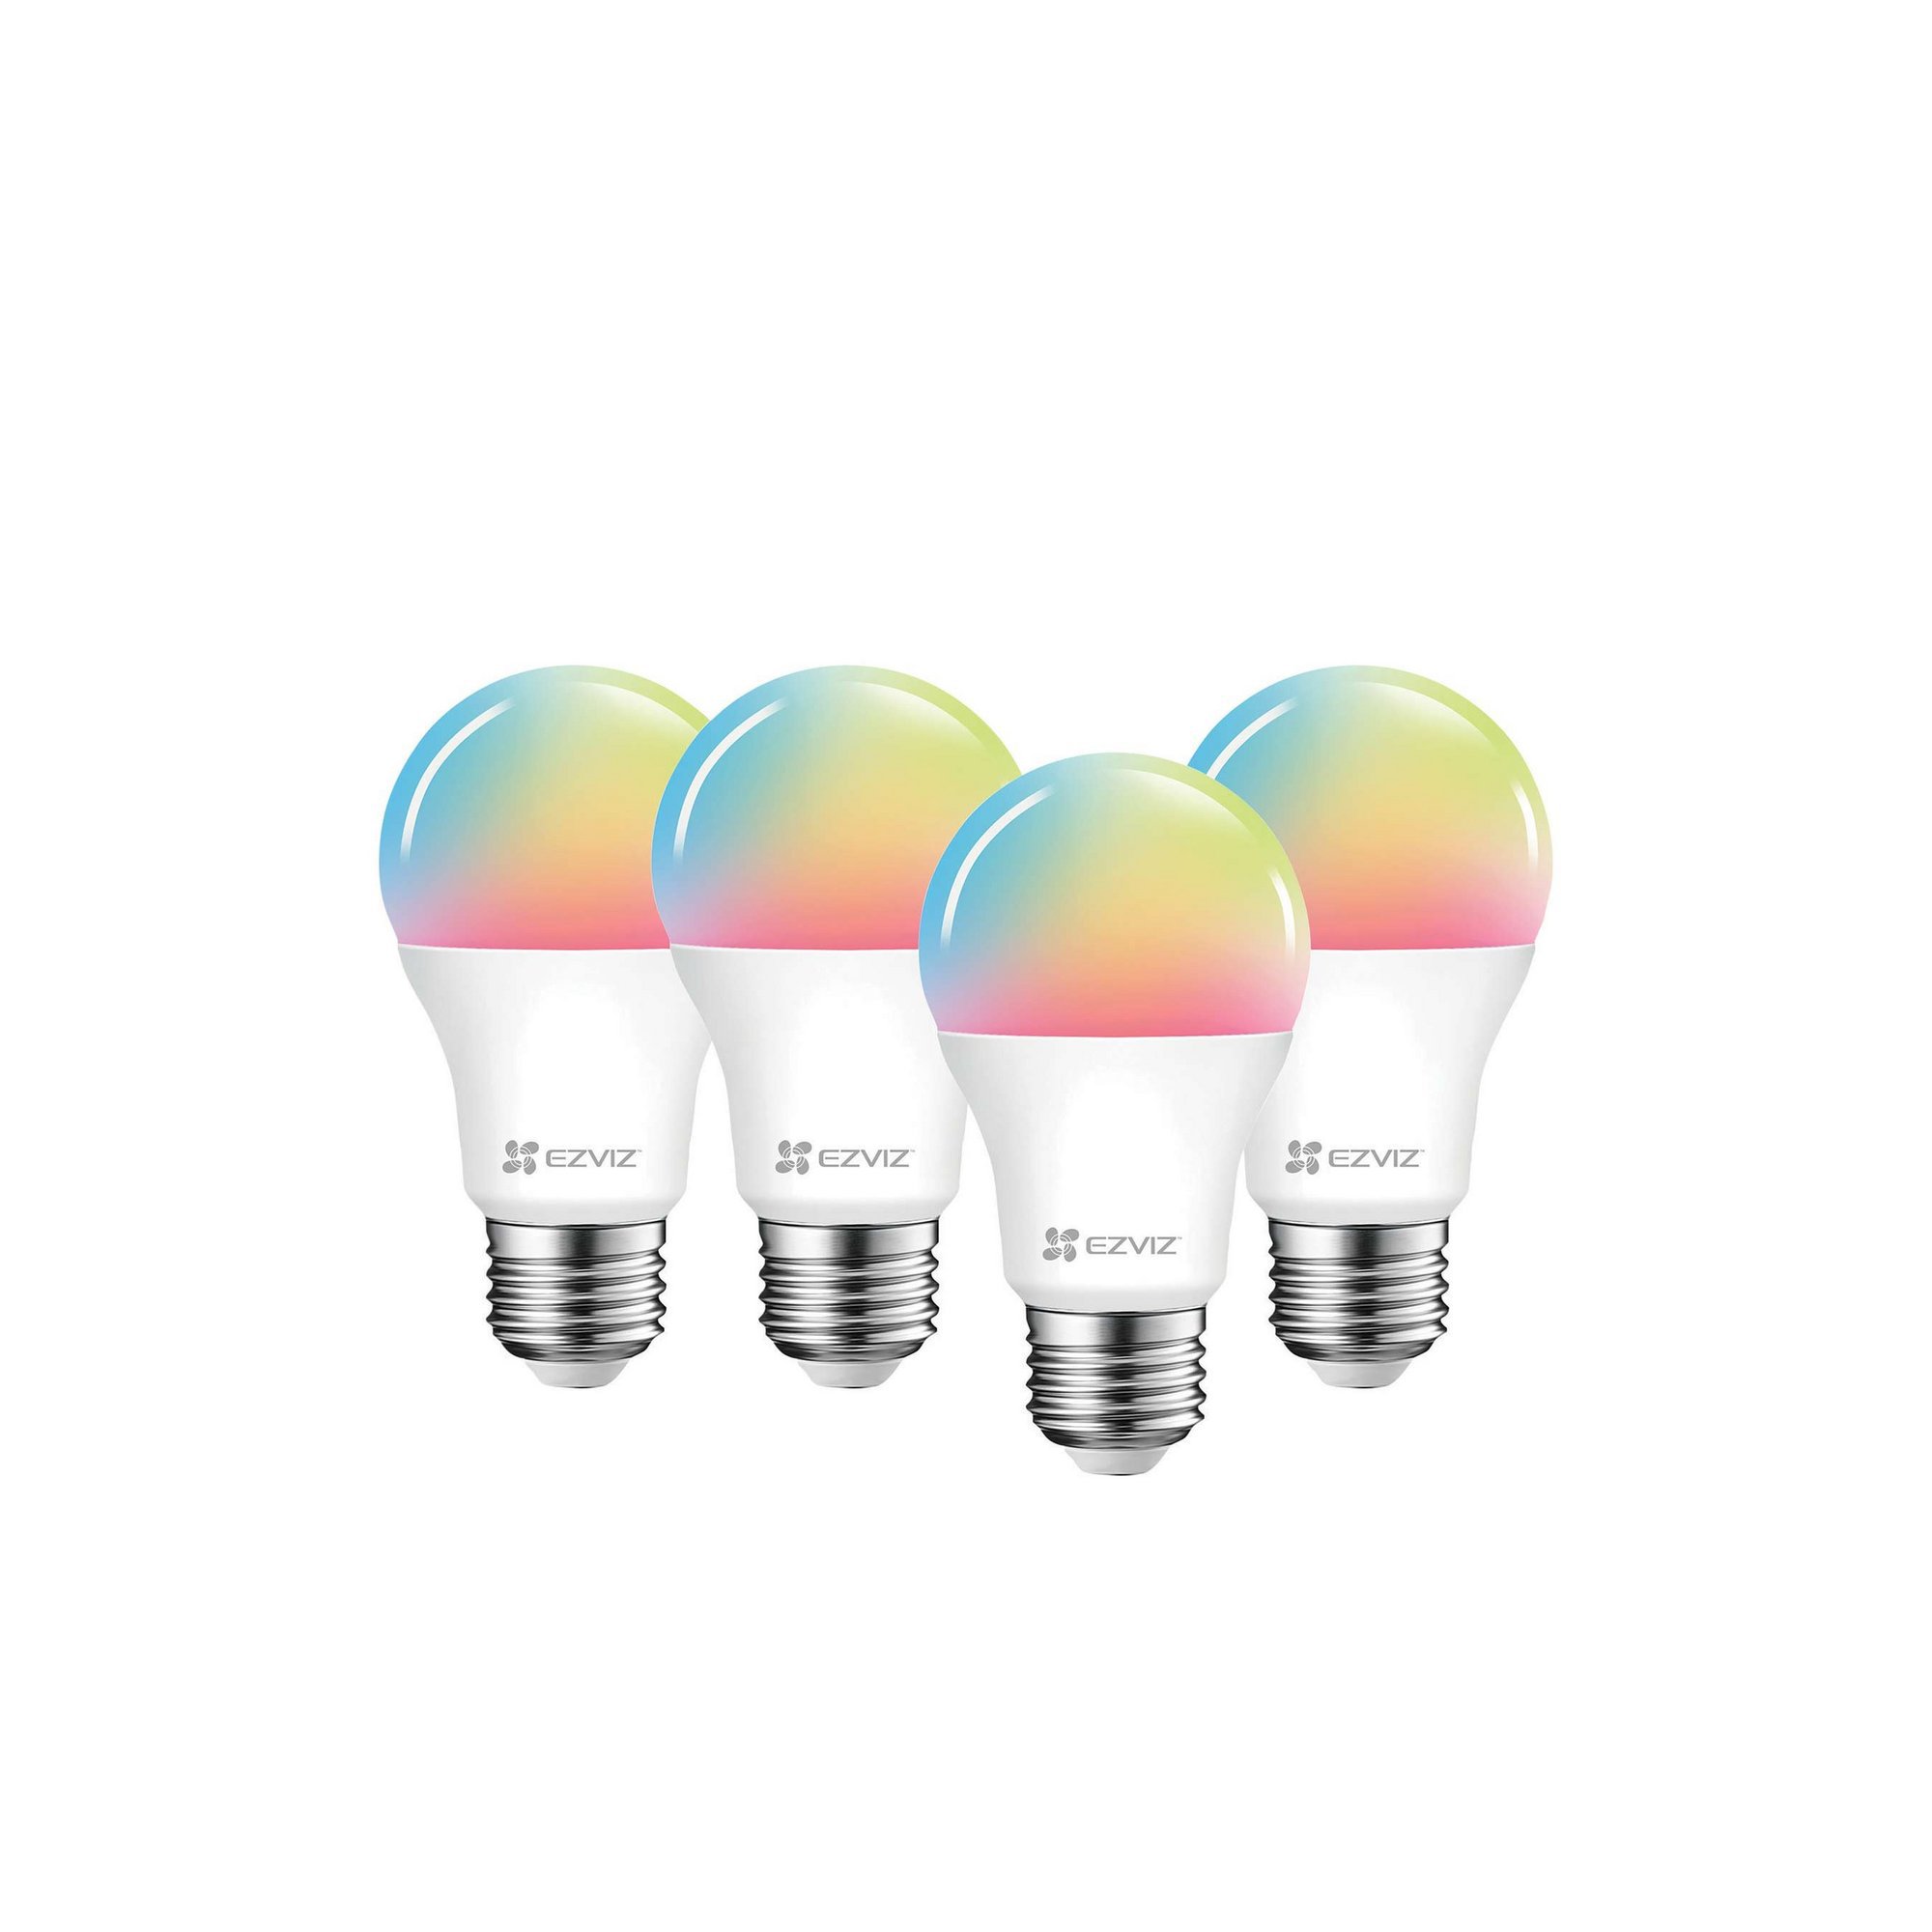 Pack of 4 Ezviz LB1 Smart LED Multicolour Light Bulbs